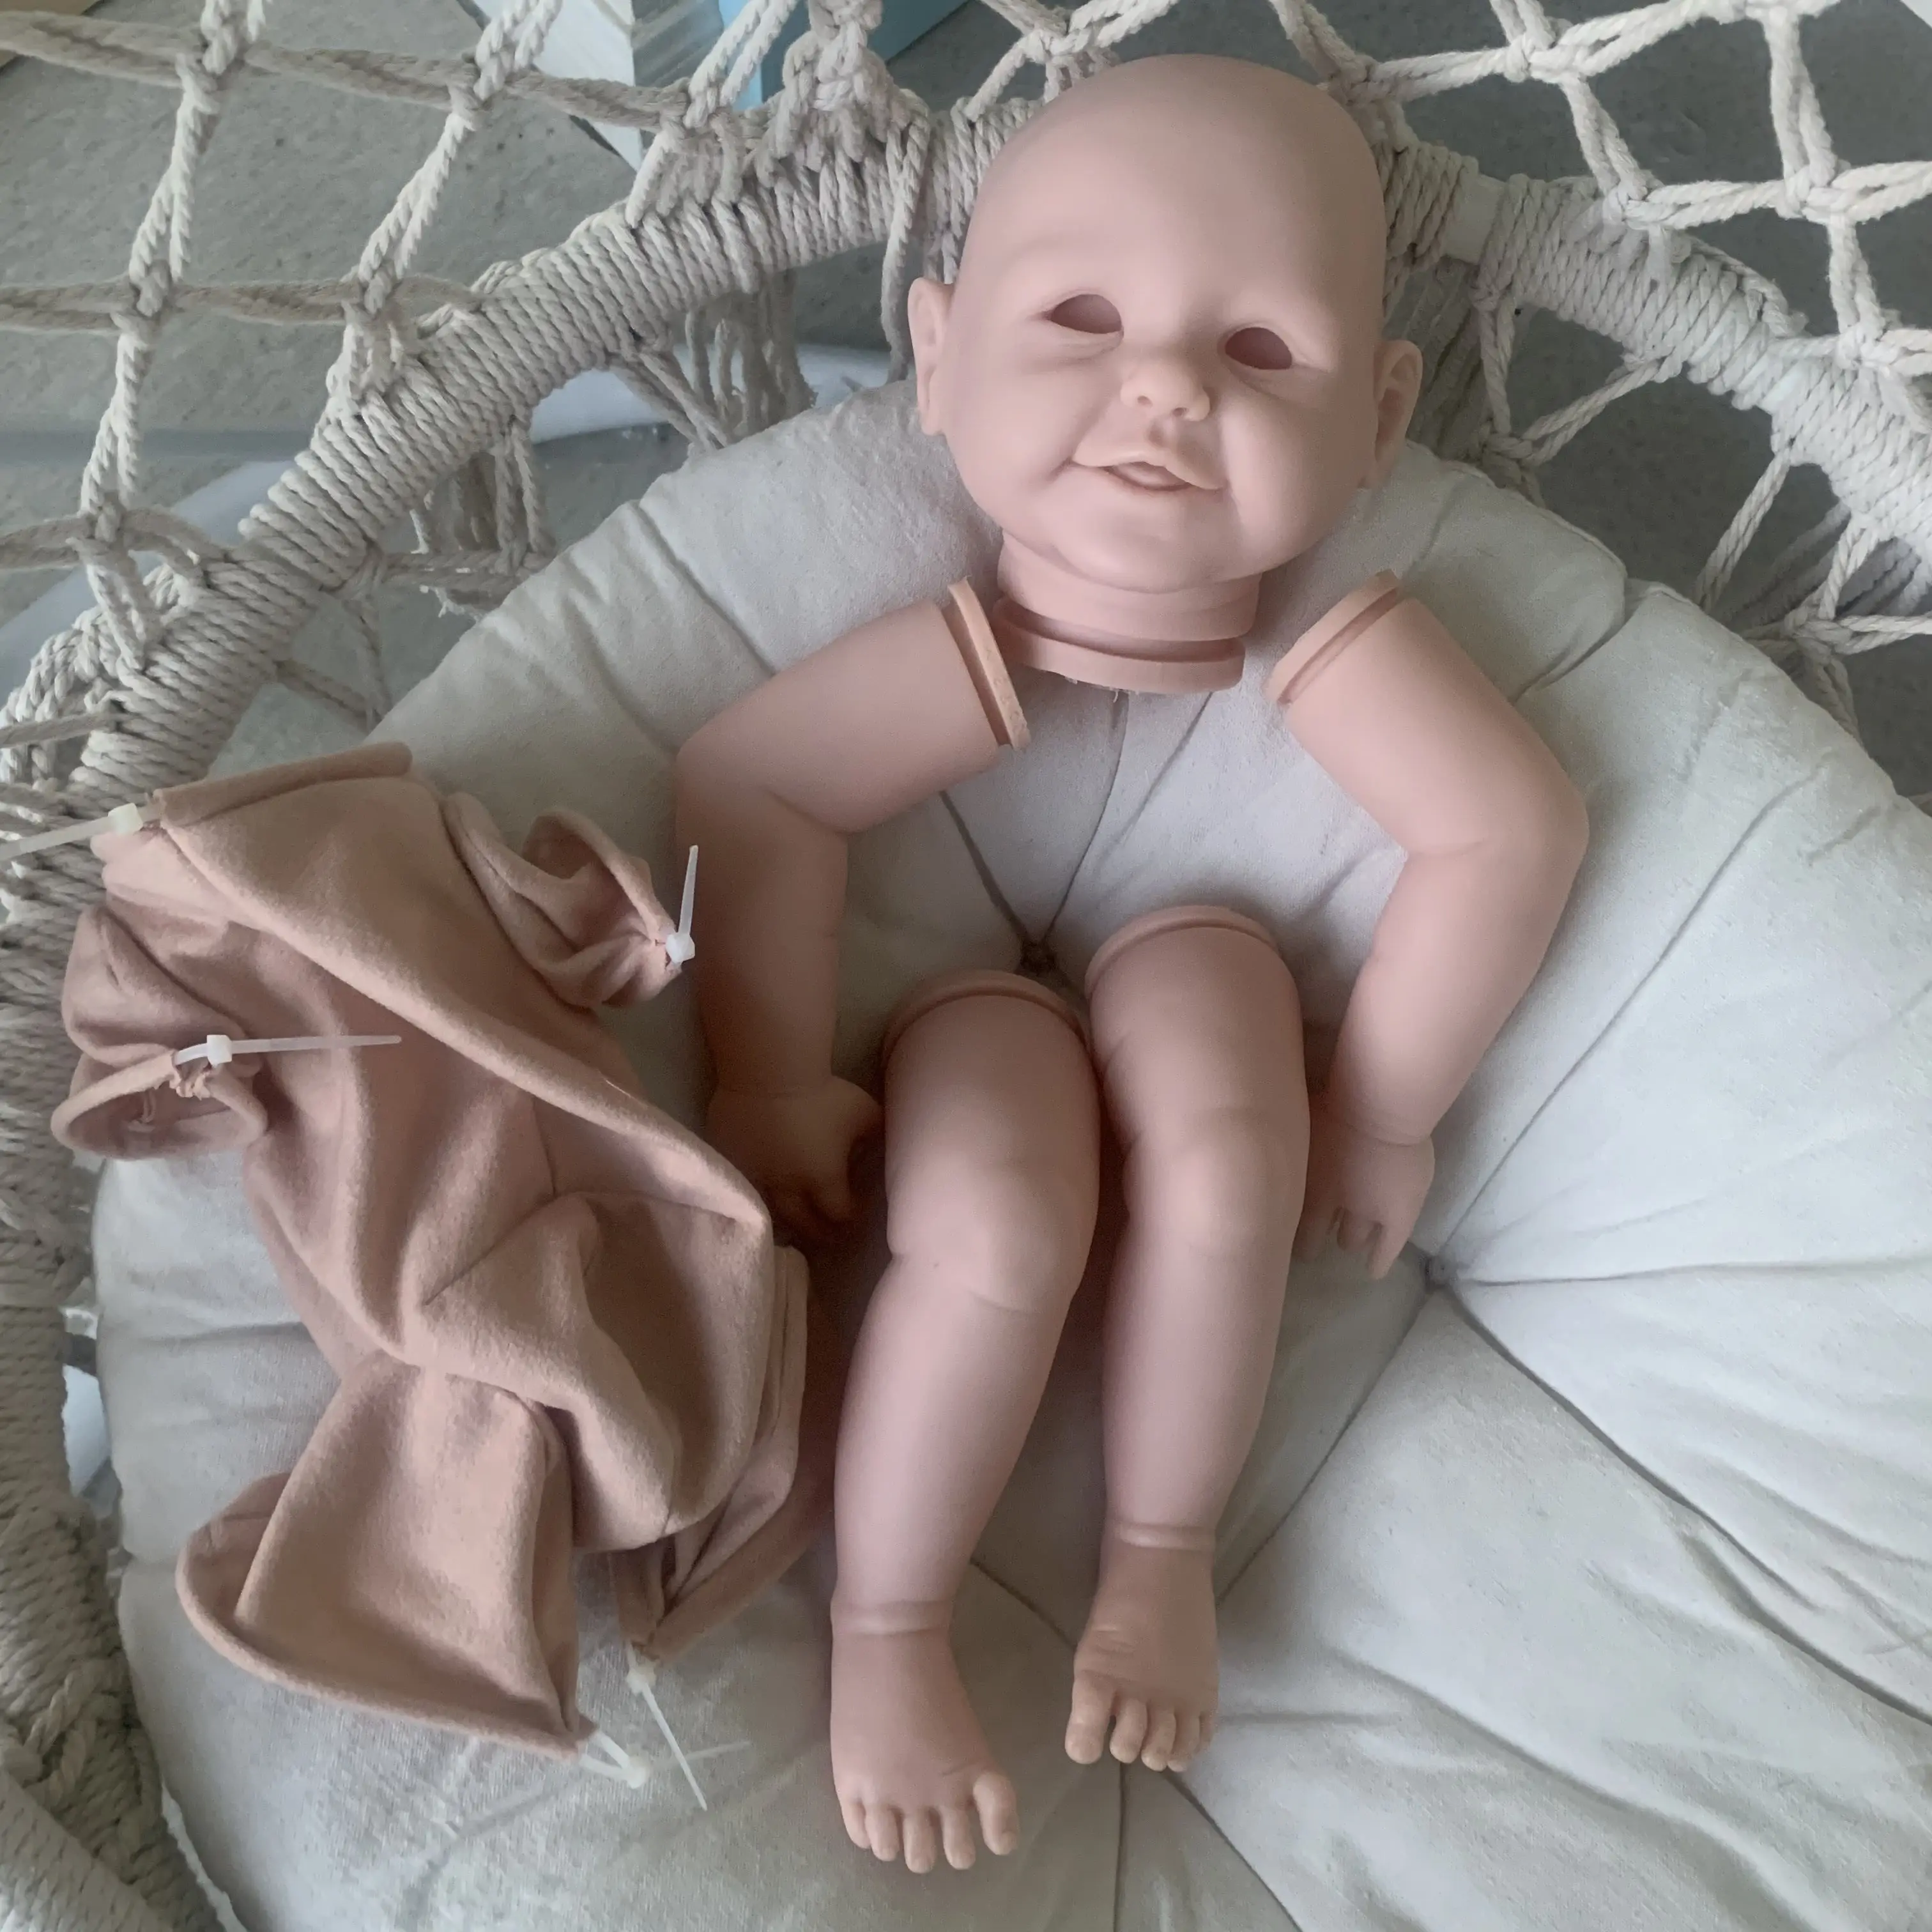 Bebe reborn kit abigail boneca